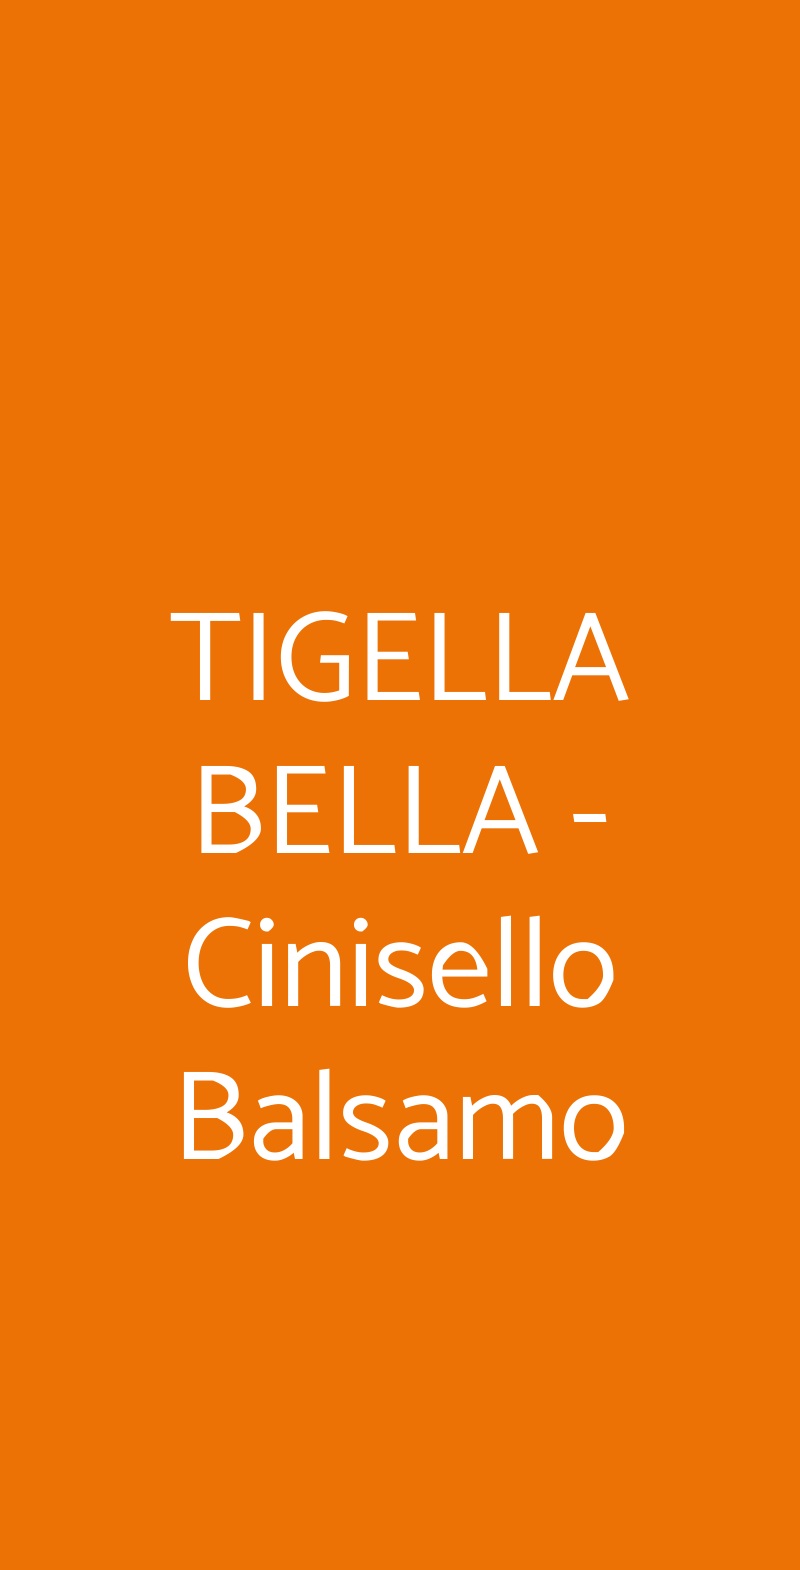 TIGELLA BELLA - Cinisello Balsamo Cinisello Balsamo menù 1 pagina